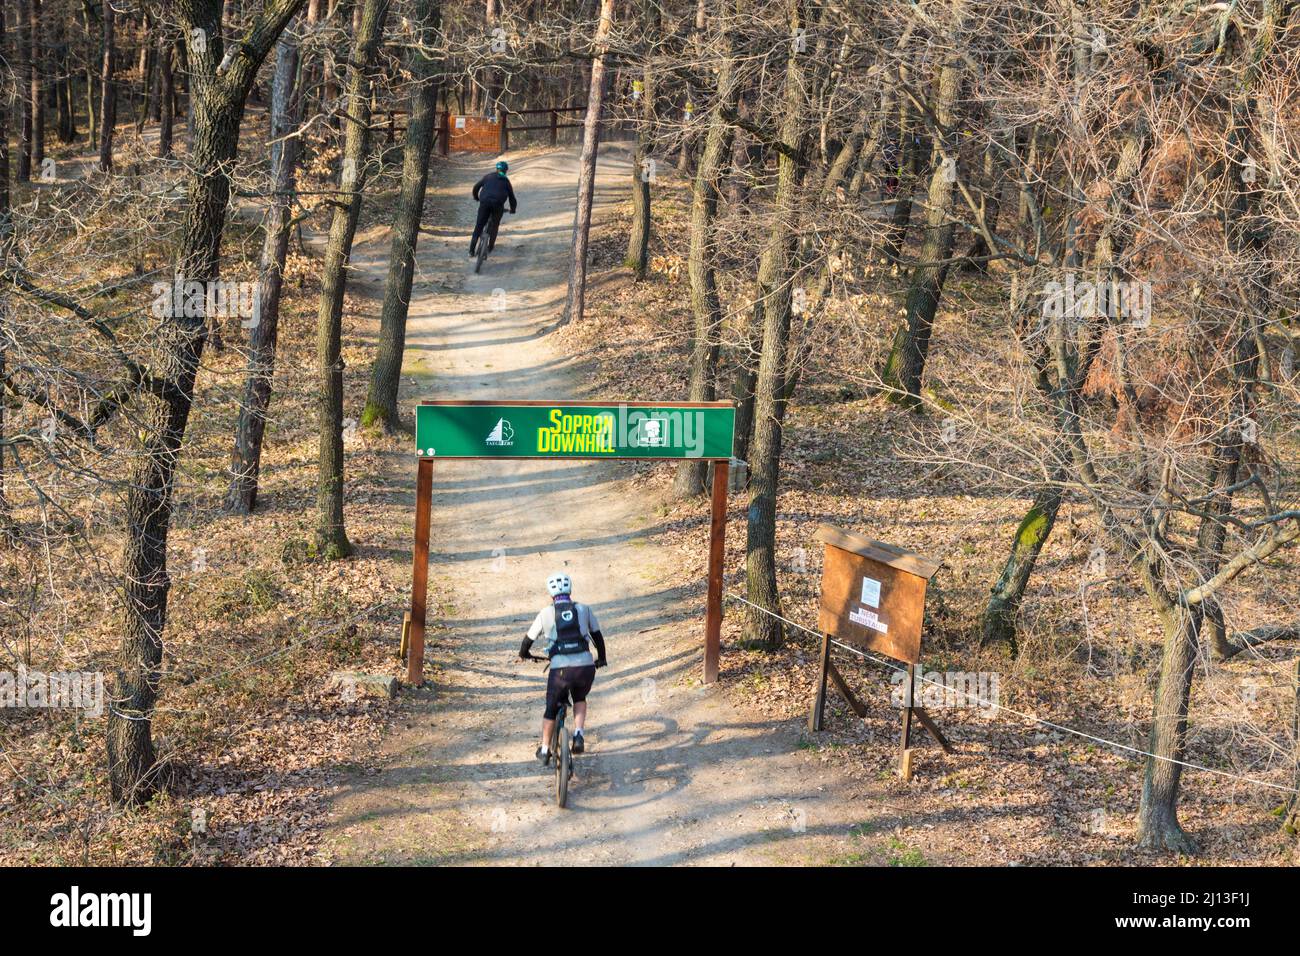 Bikers at start point of Sopron Downhill mountain biking trail at Varhely-kilato, Sopron Mountains, Sopron, Hungary Stock Photo